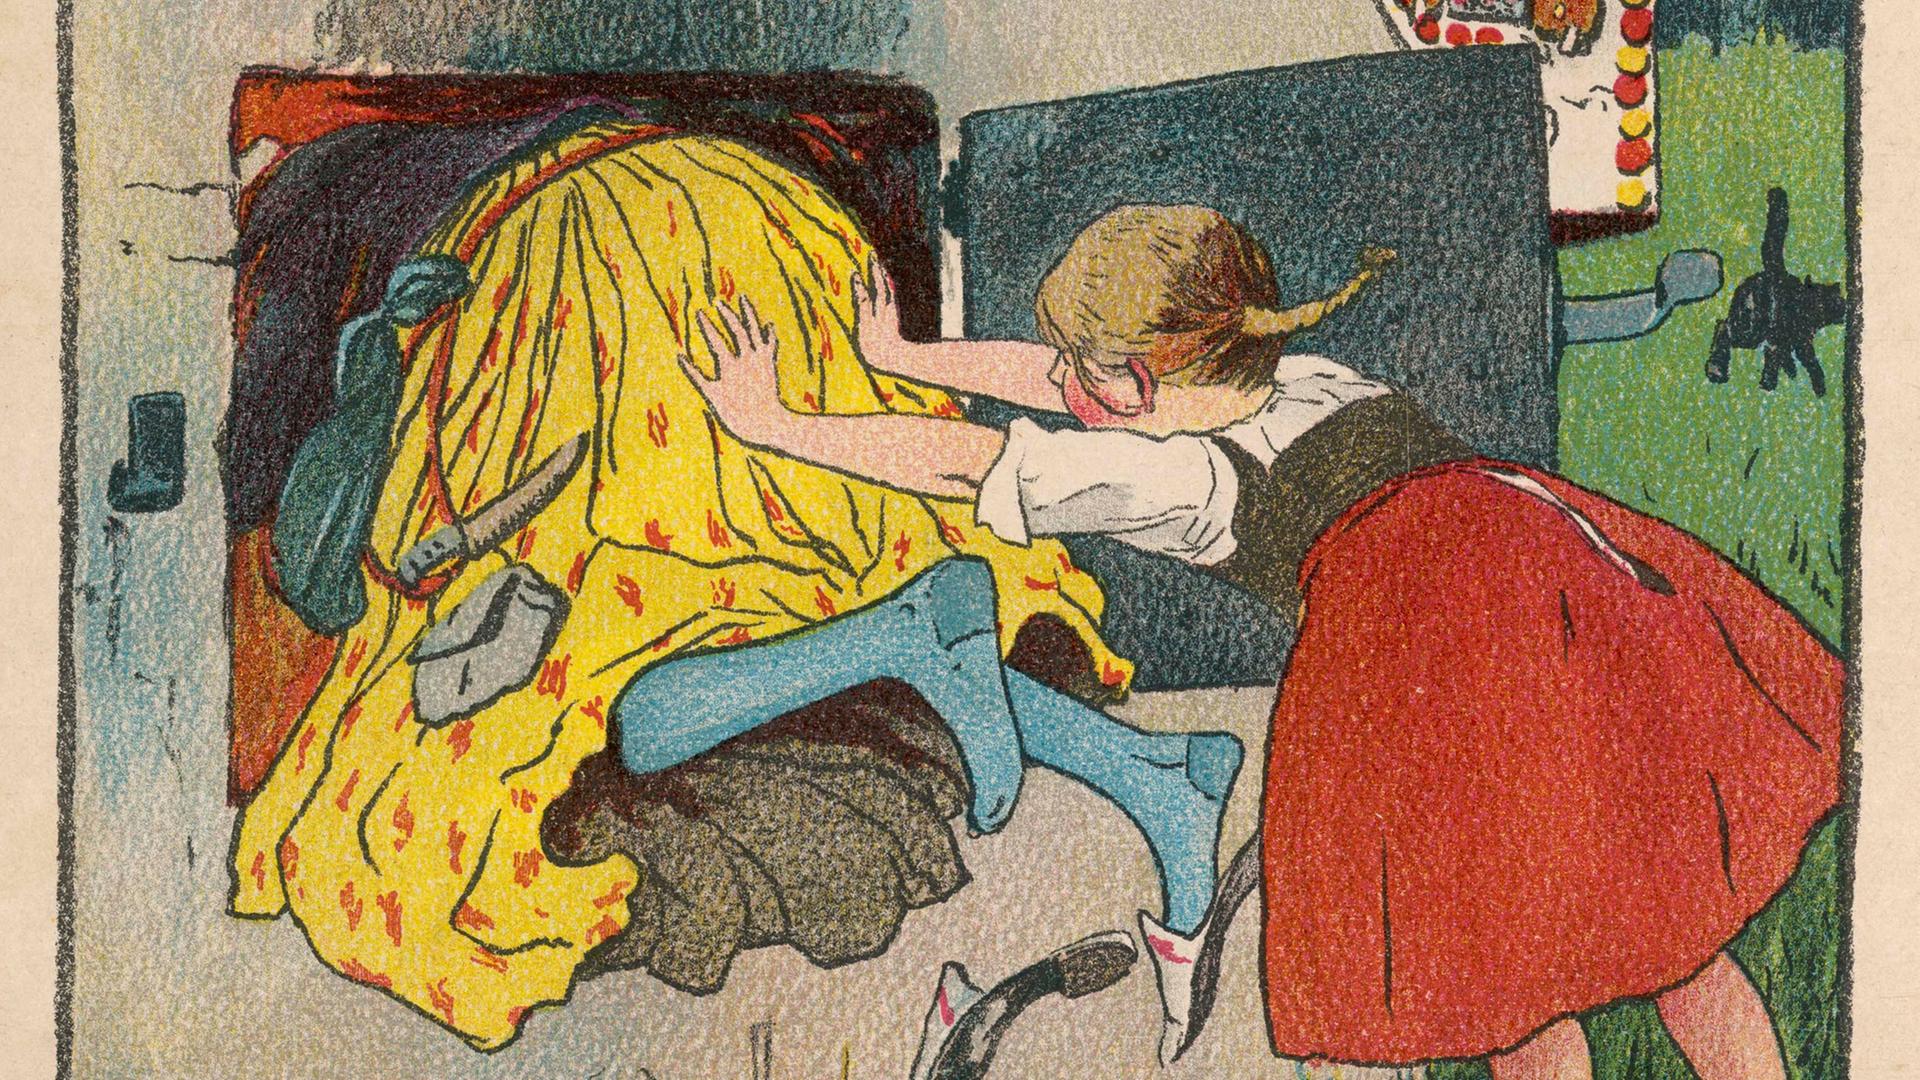 Gretel schubst die Hexe in den Ofen. (Illustration von Willy Planck in Deutsches Märchenbuch, 'Hänsel und Gretel')